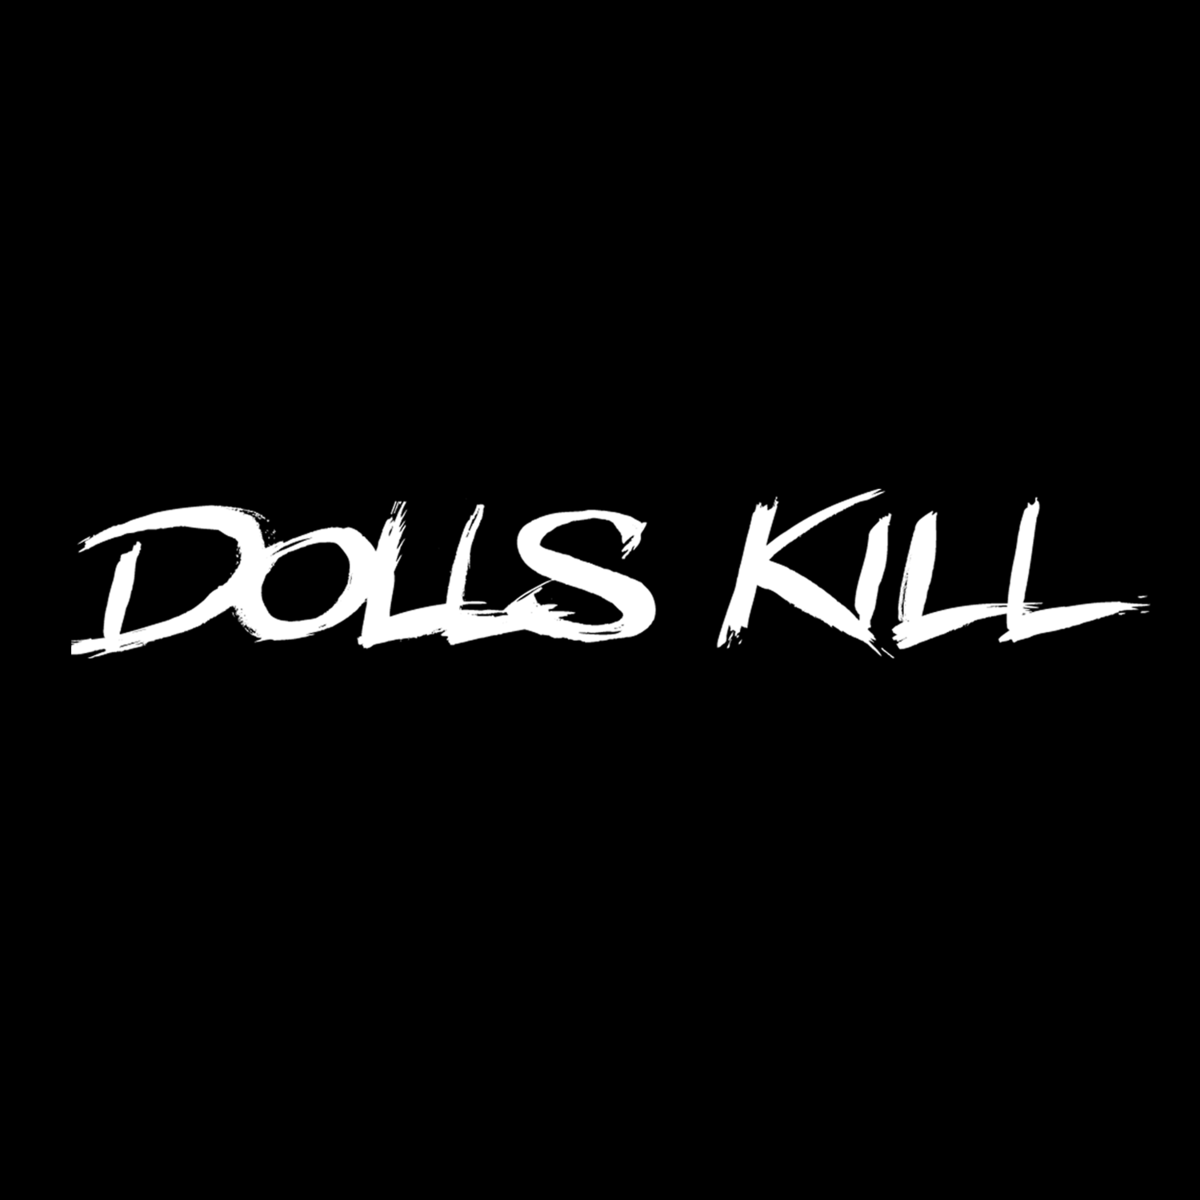 Killing dolls. Dolls Kill. Dolls Kill интернет магазин. Dollskill магазин. Доллс кил лого.